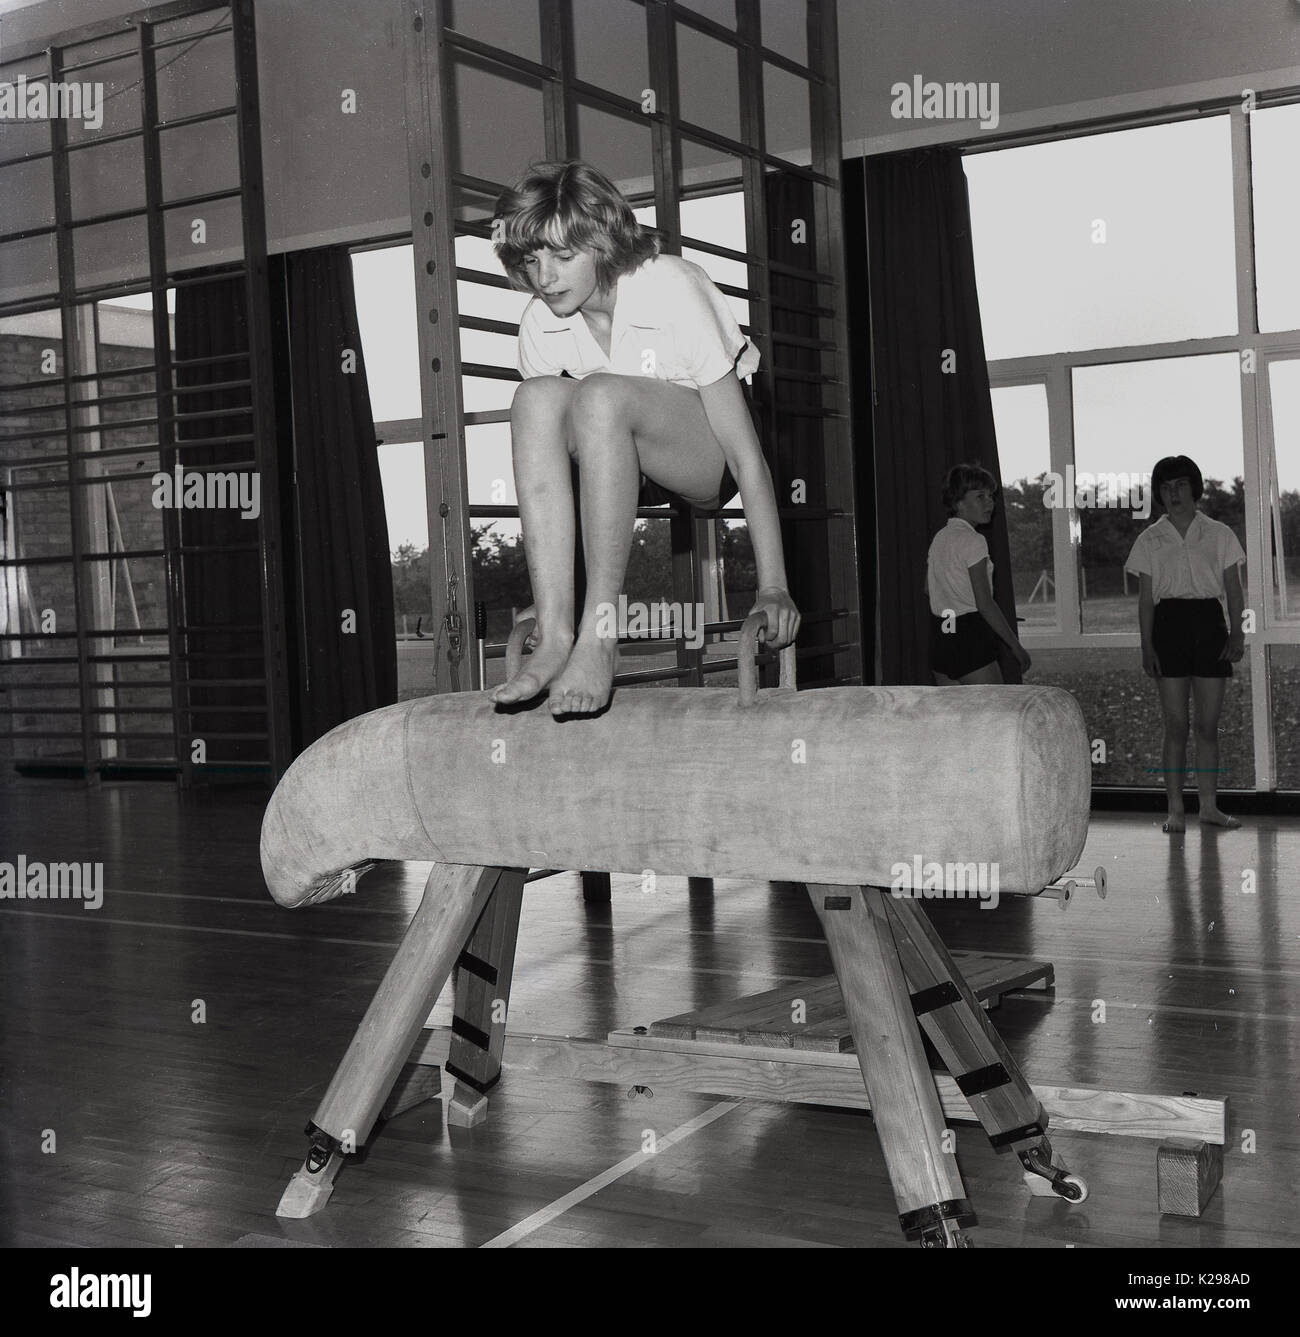 1960, historische, Bild zeigt ein junges Mädchen in einer weiterführenden Schule springen oder vaulting in Barfuss über eine Wildleder bedeckt Holz gerahmt Pferd in der Schule Hall, England, UK. Stockfoto